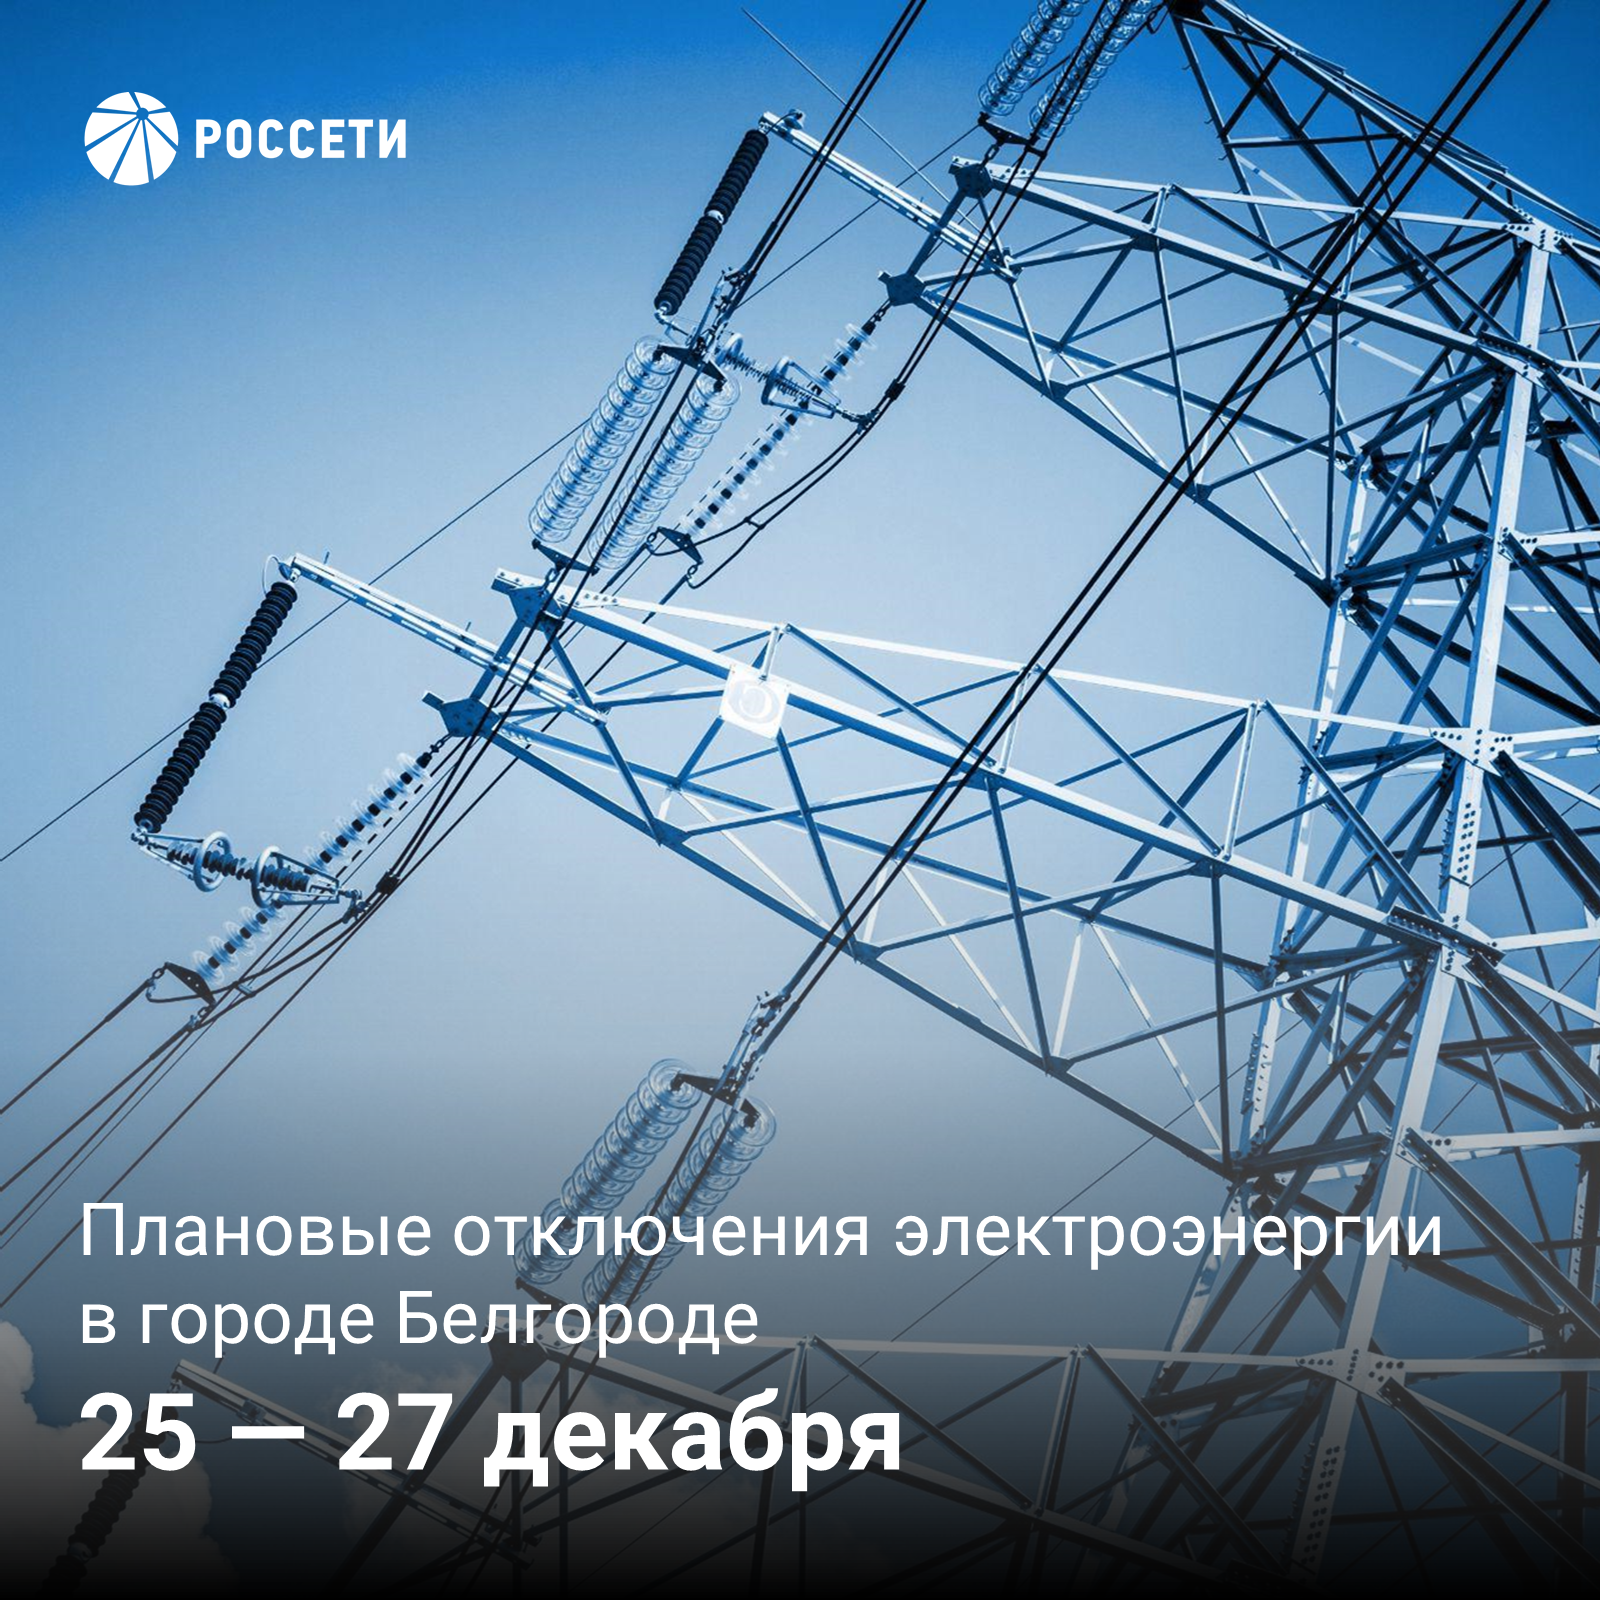 В Белгороде пройдут плановые отключения электроэнергии.